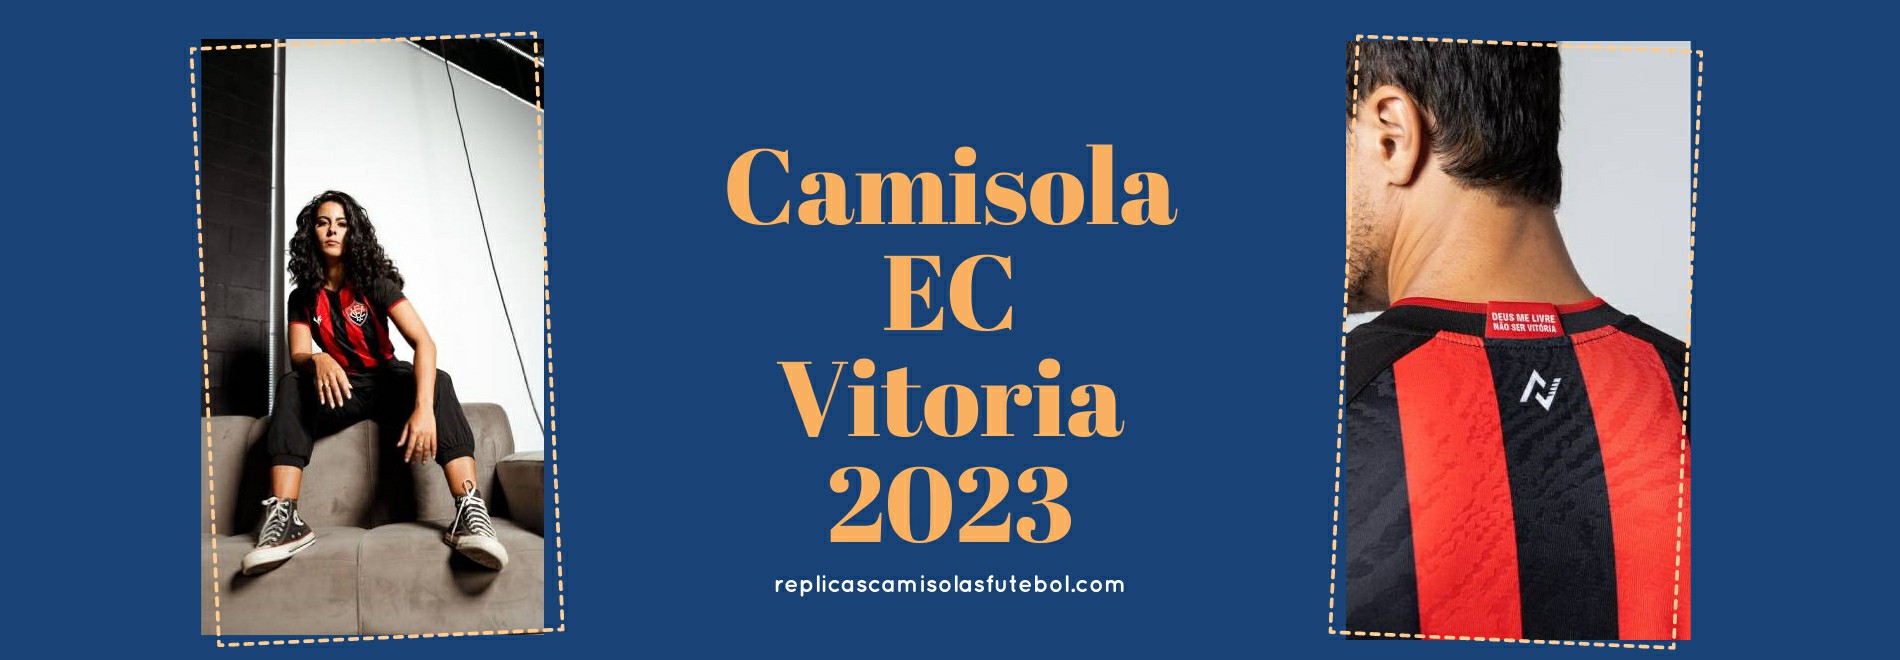 Camisola EC Vitoria 2023-2024